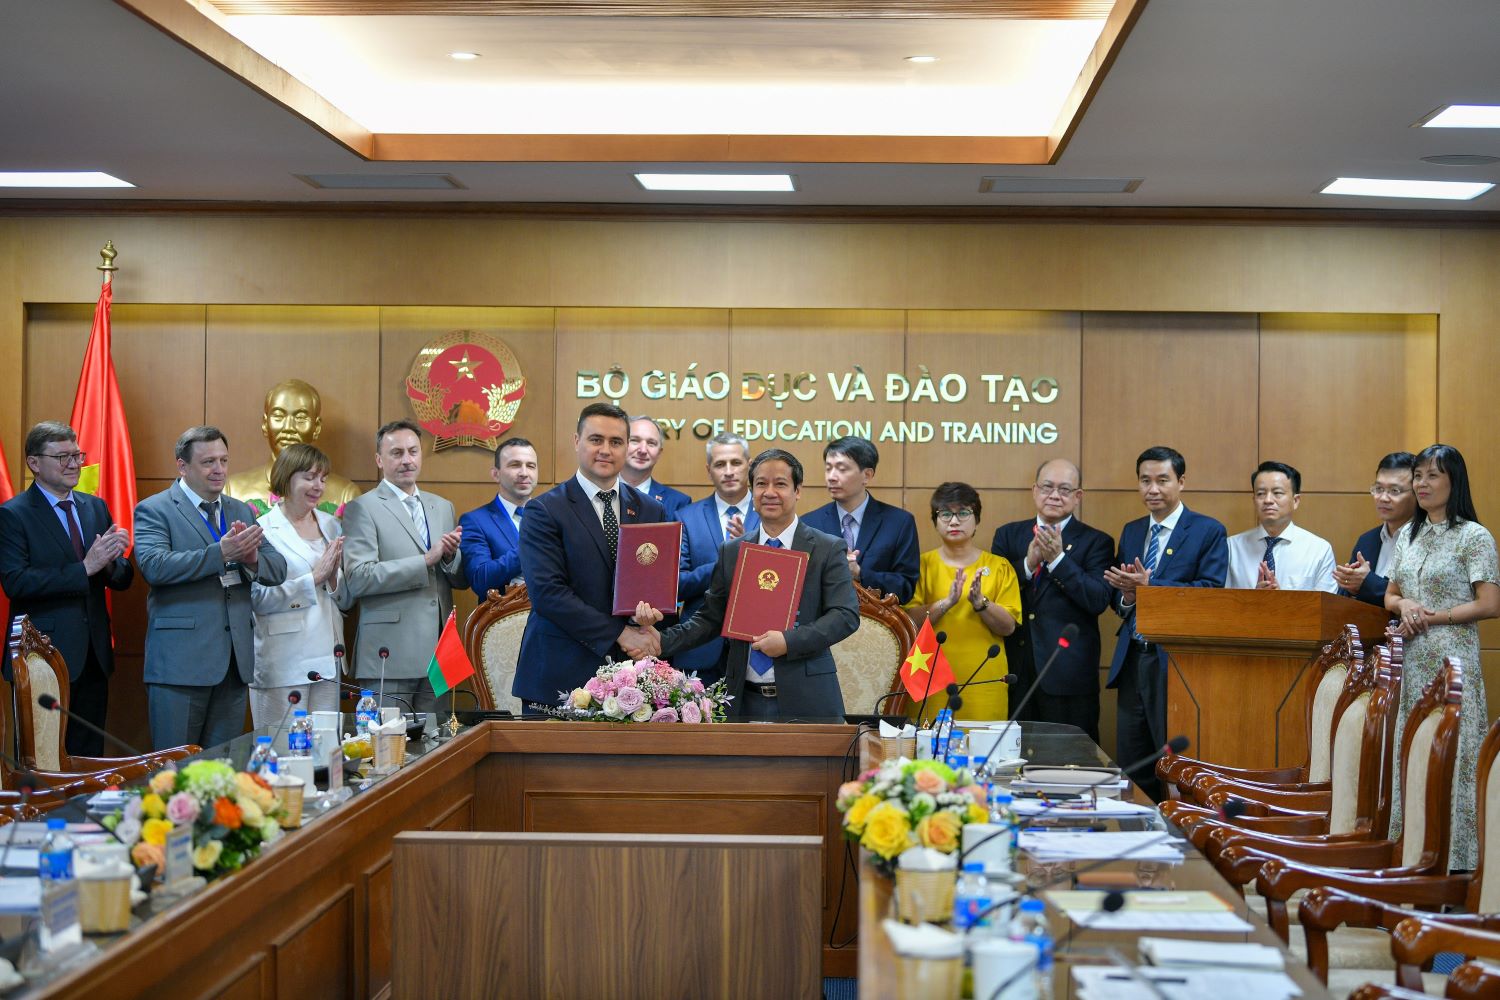 Bộ trưởng Bộ GD&ĐT Việt Nam Nguyễn Kim Sơn, Bộ trưởng Bộ Giáo dục Belarus Ivanets Andrei Ivanovich đại diện hai bên ký kết Hiệp định hợp tác.